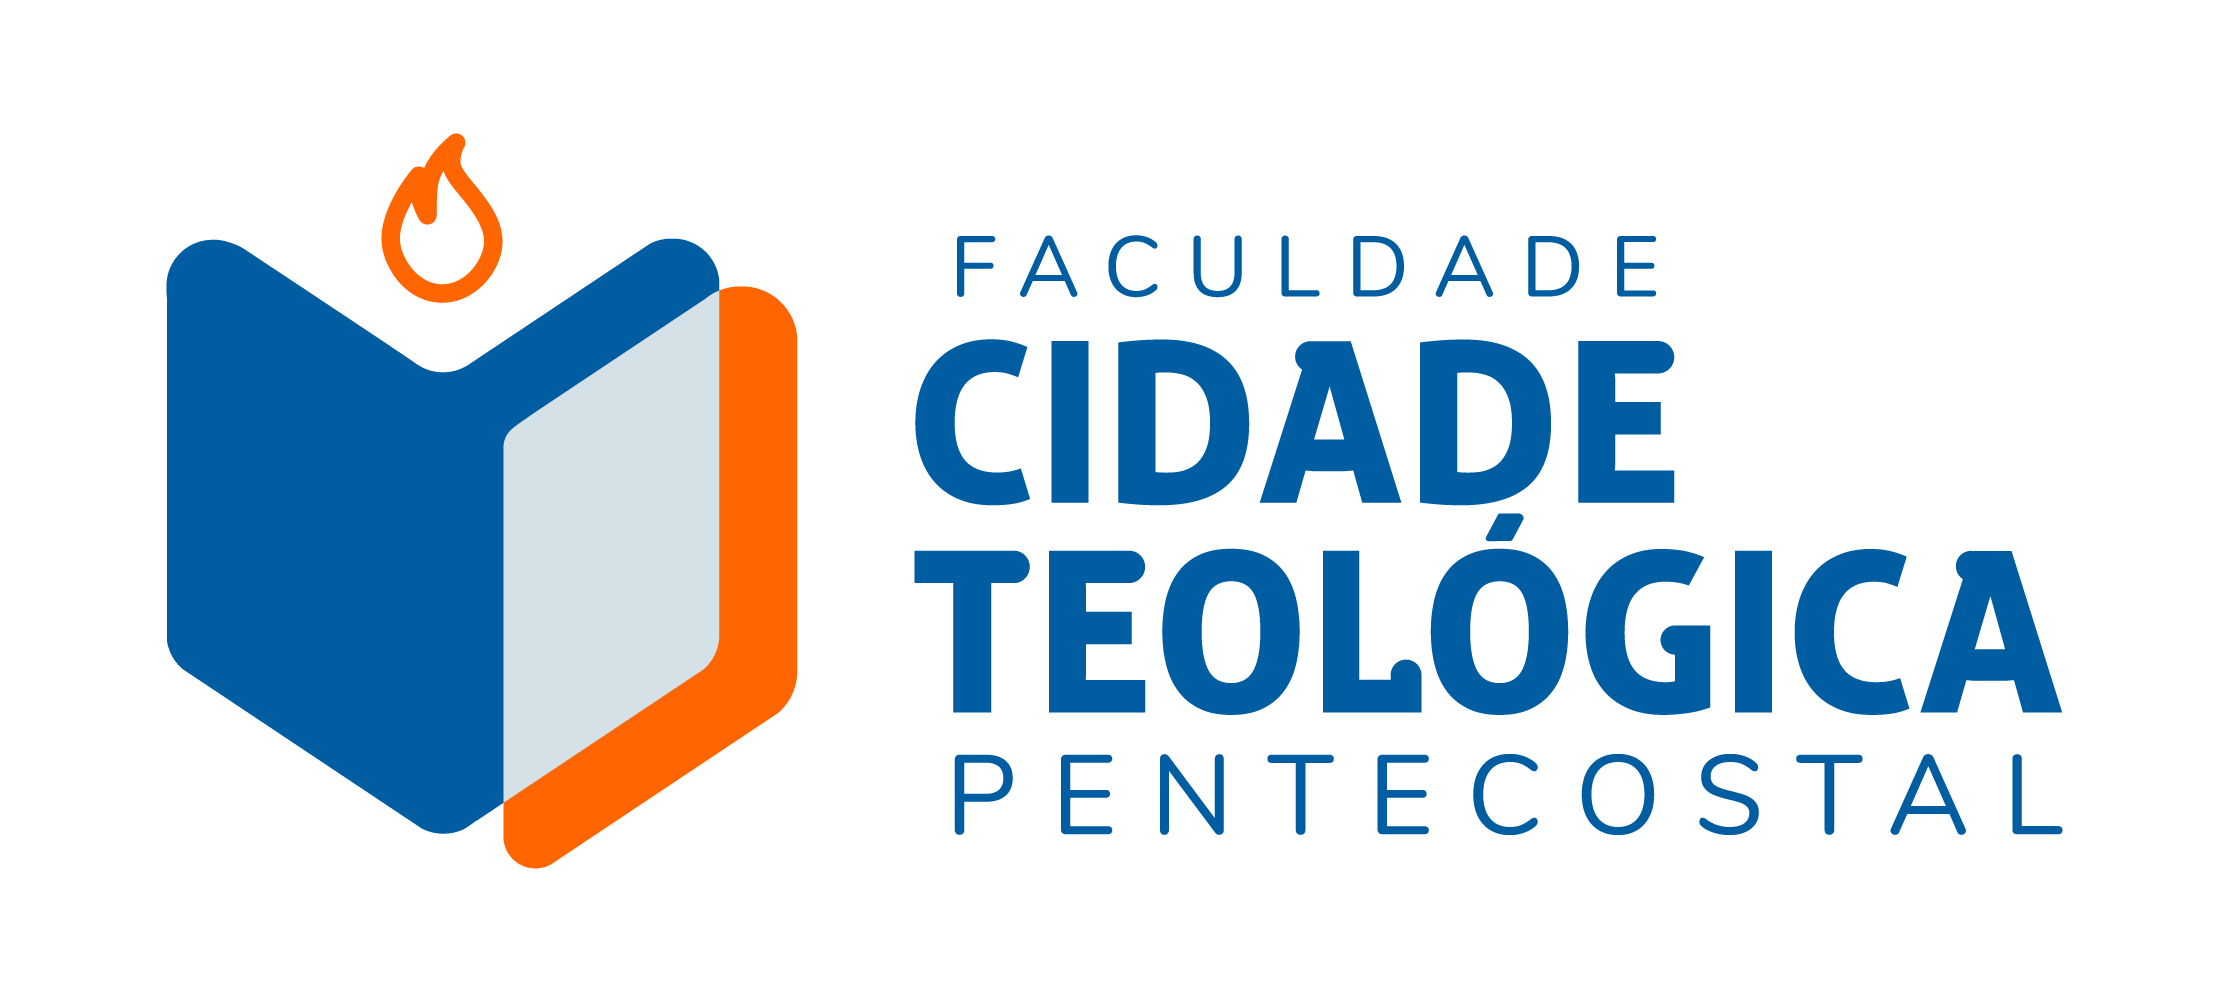 Faculdade Cidade Teológica Pentecostal